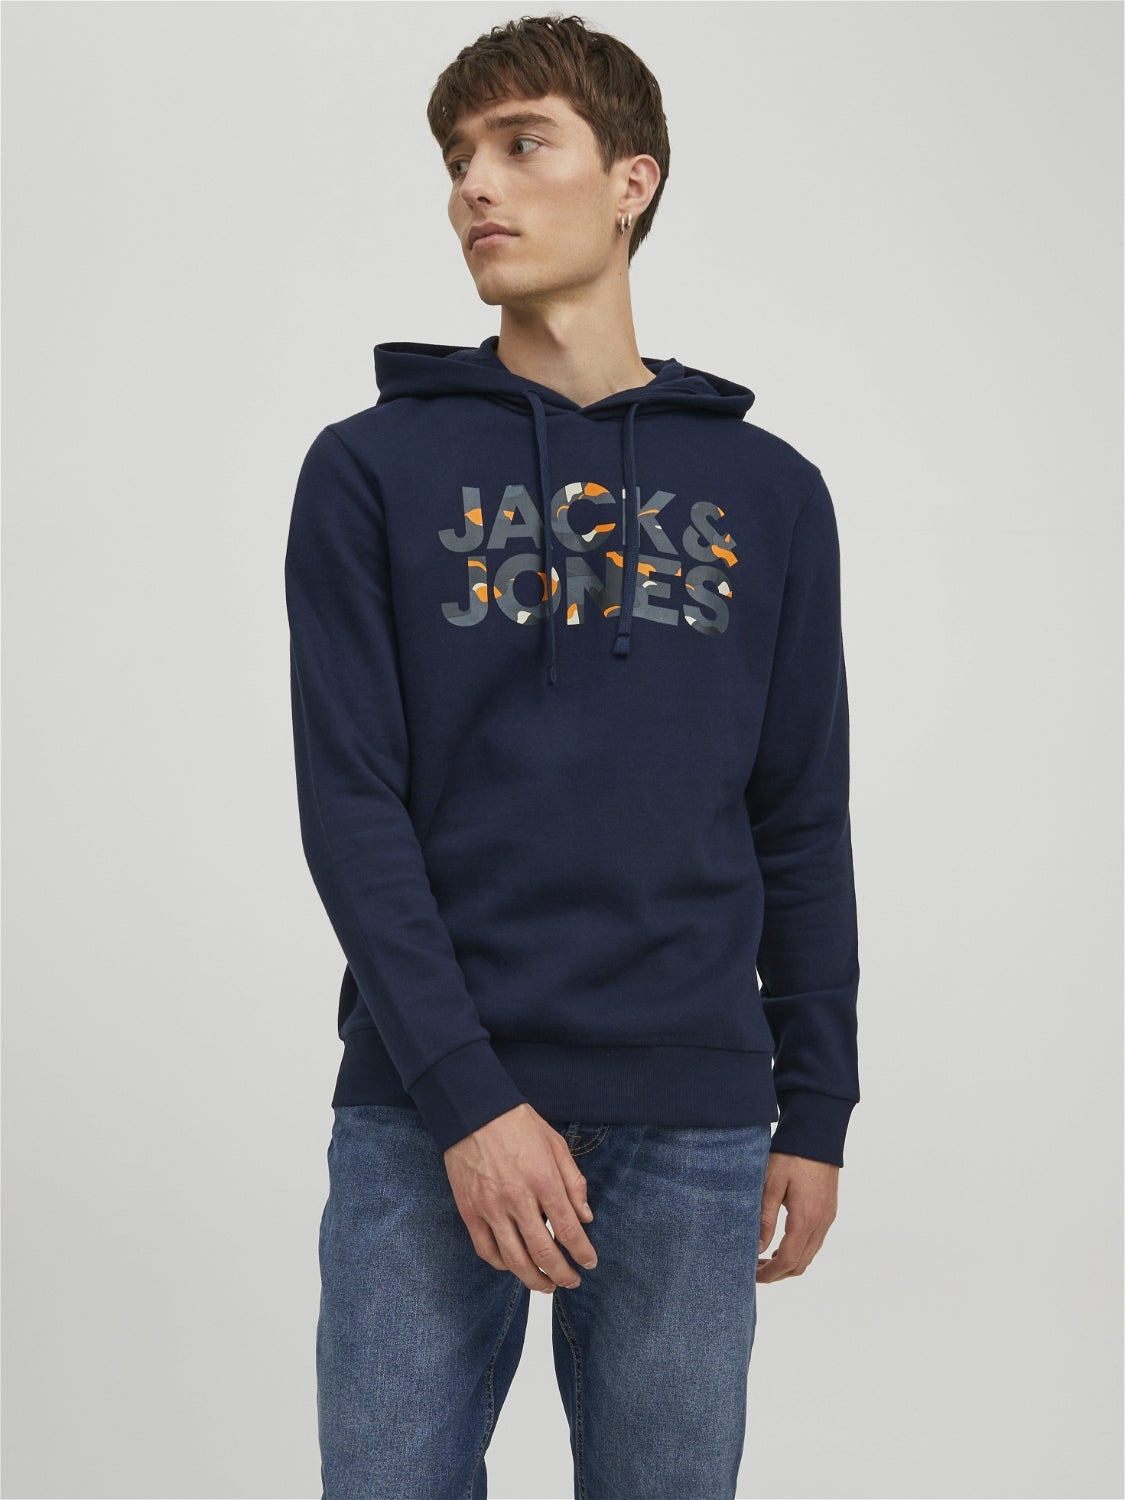 Jack & Jones Pullover Schwarz M HERREN Pullovers & Sweatshirts Stricken Rabatt 58 % 